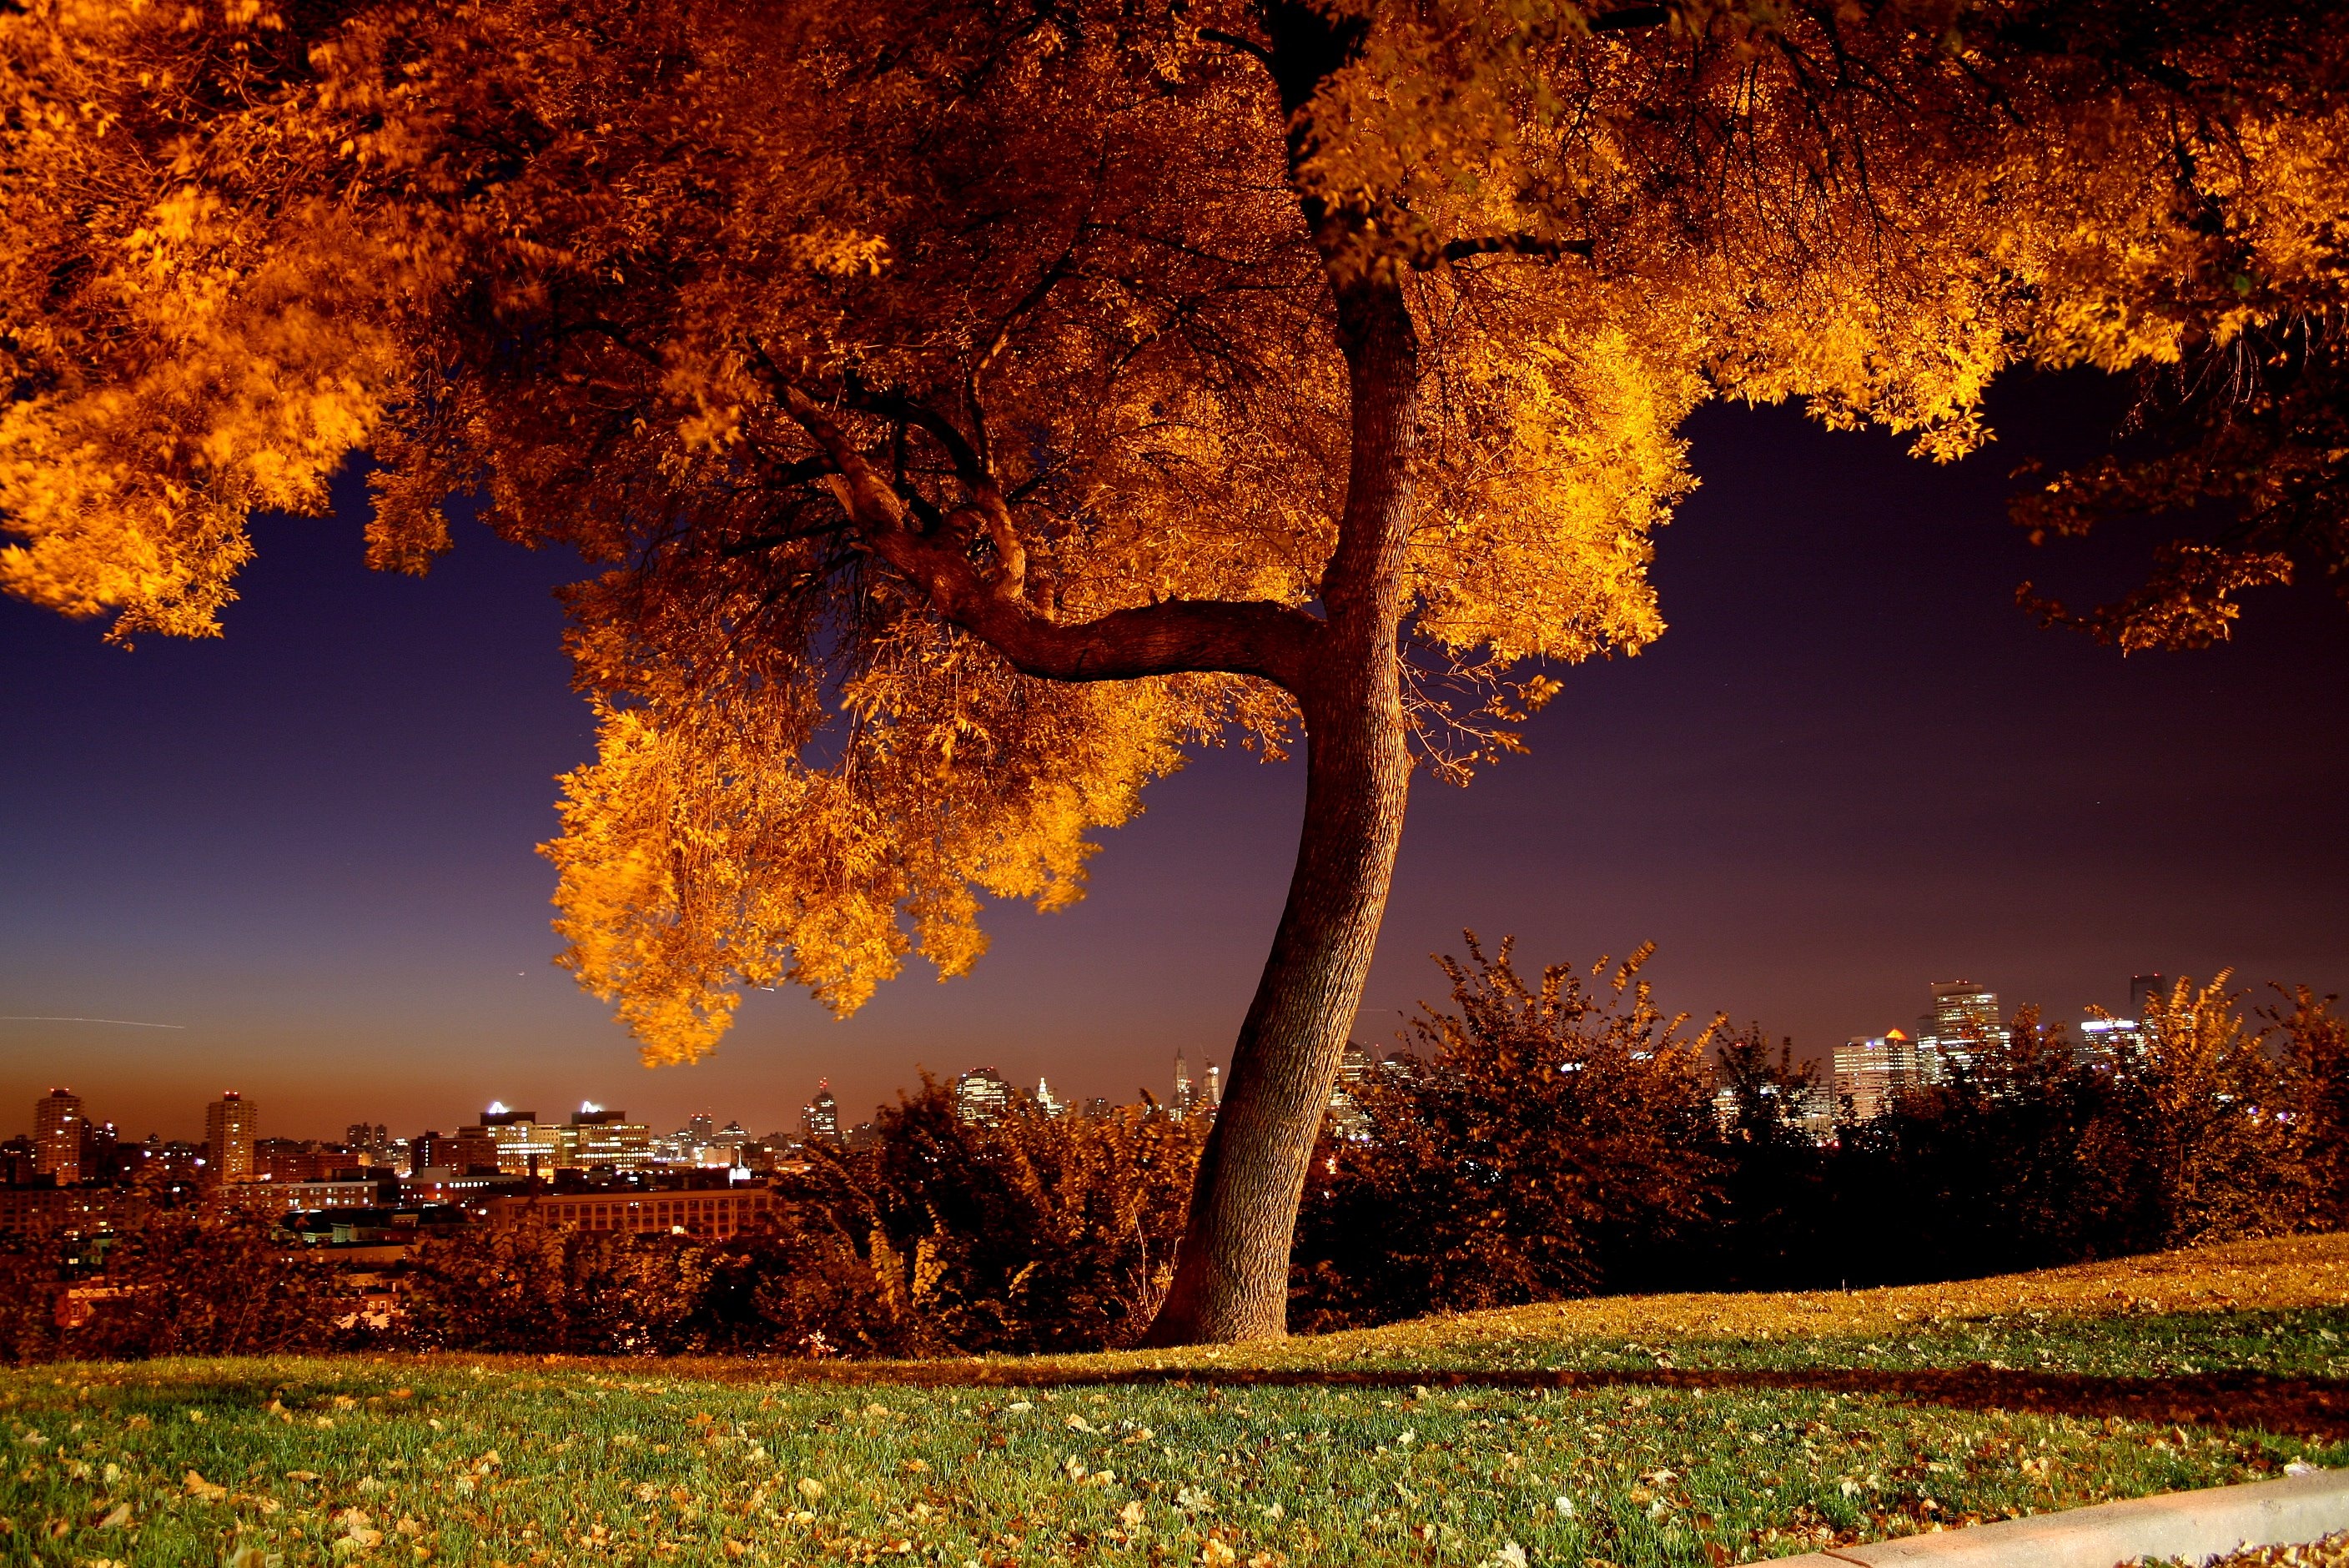 Sunlit landscape, City lights, Tranquil park, Beautiful autumn, 2820x1880 HD Desktop